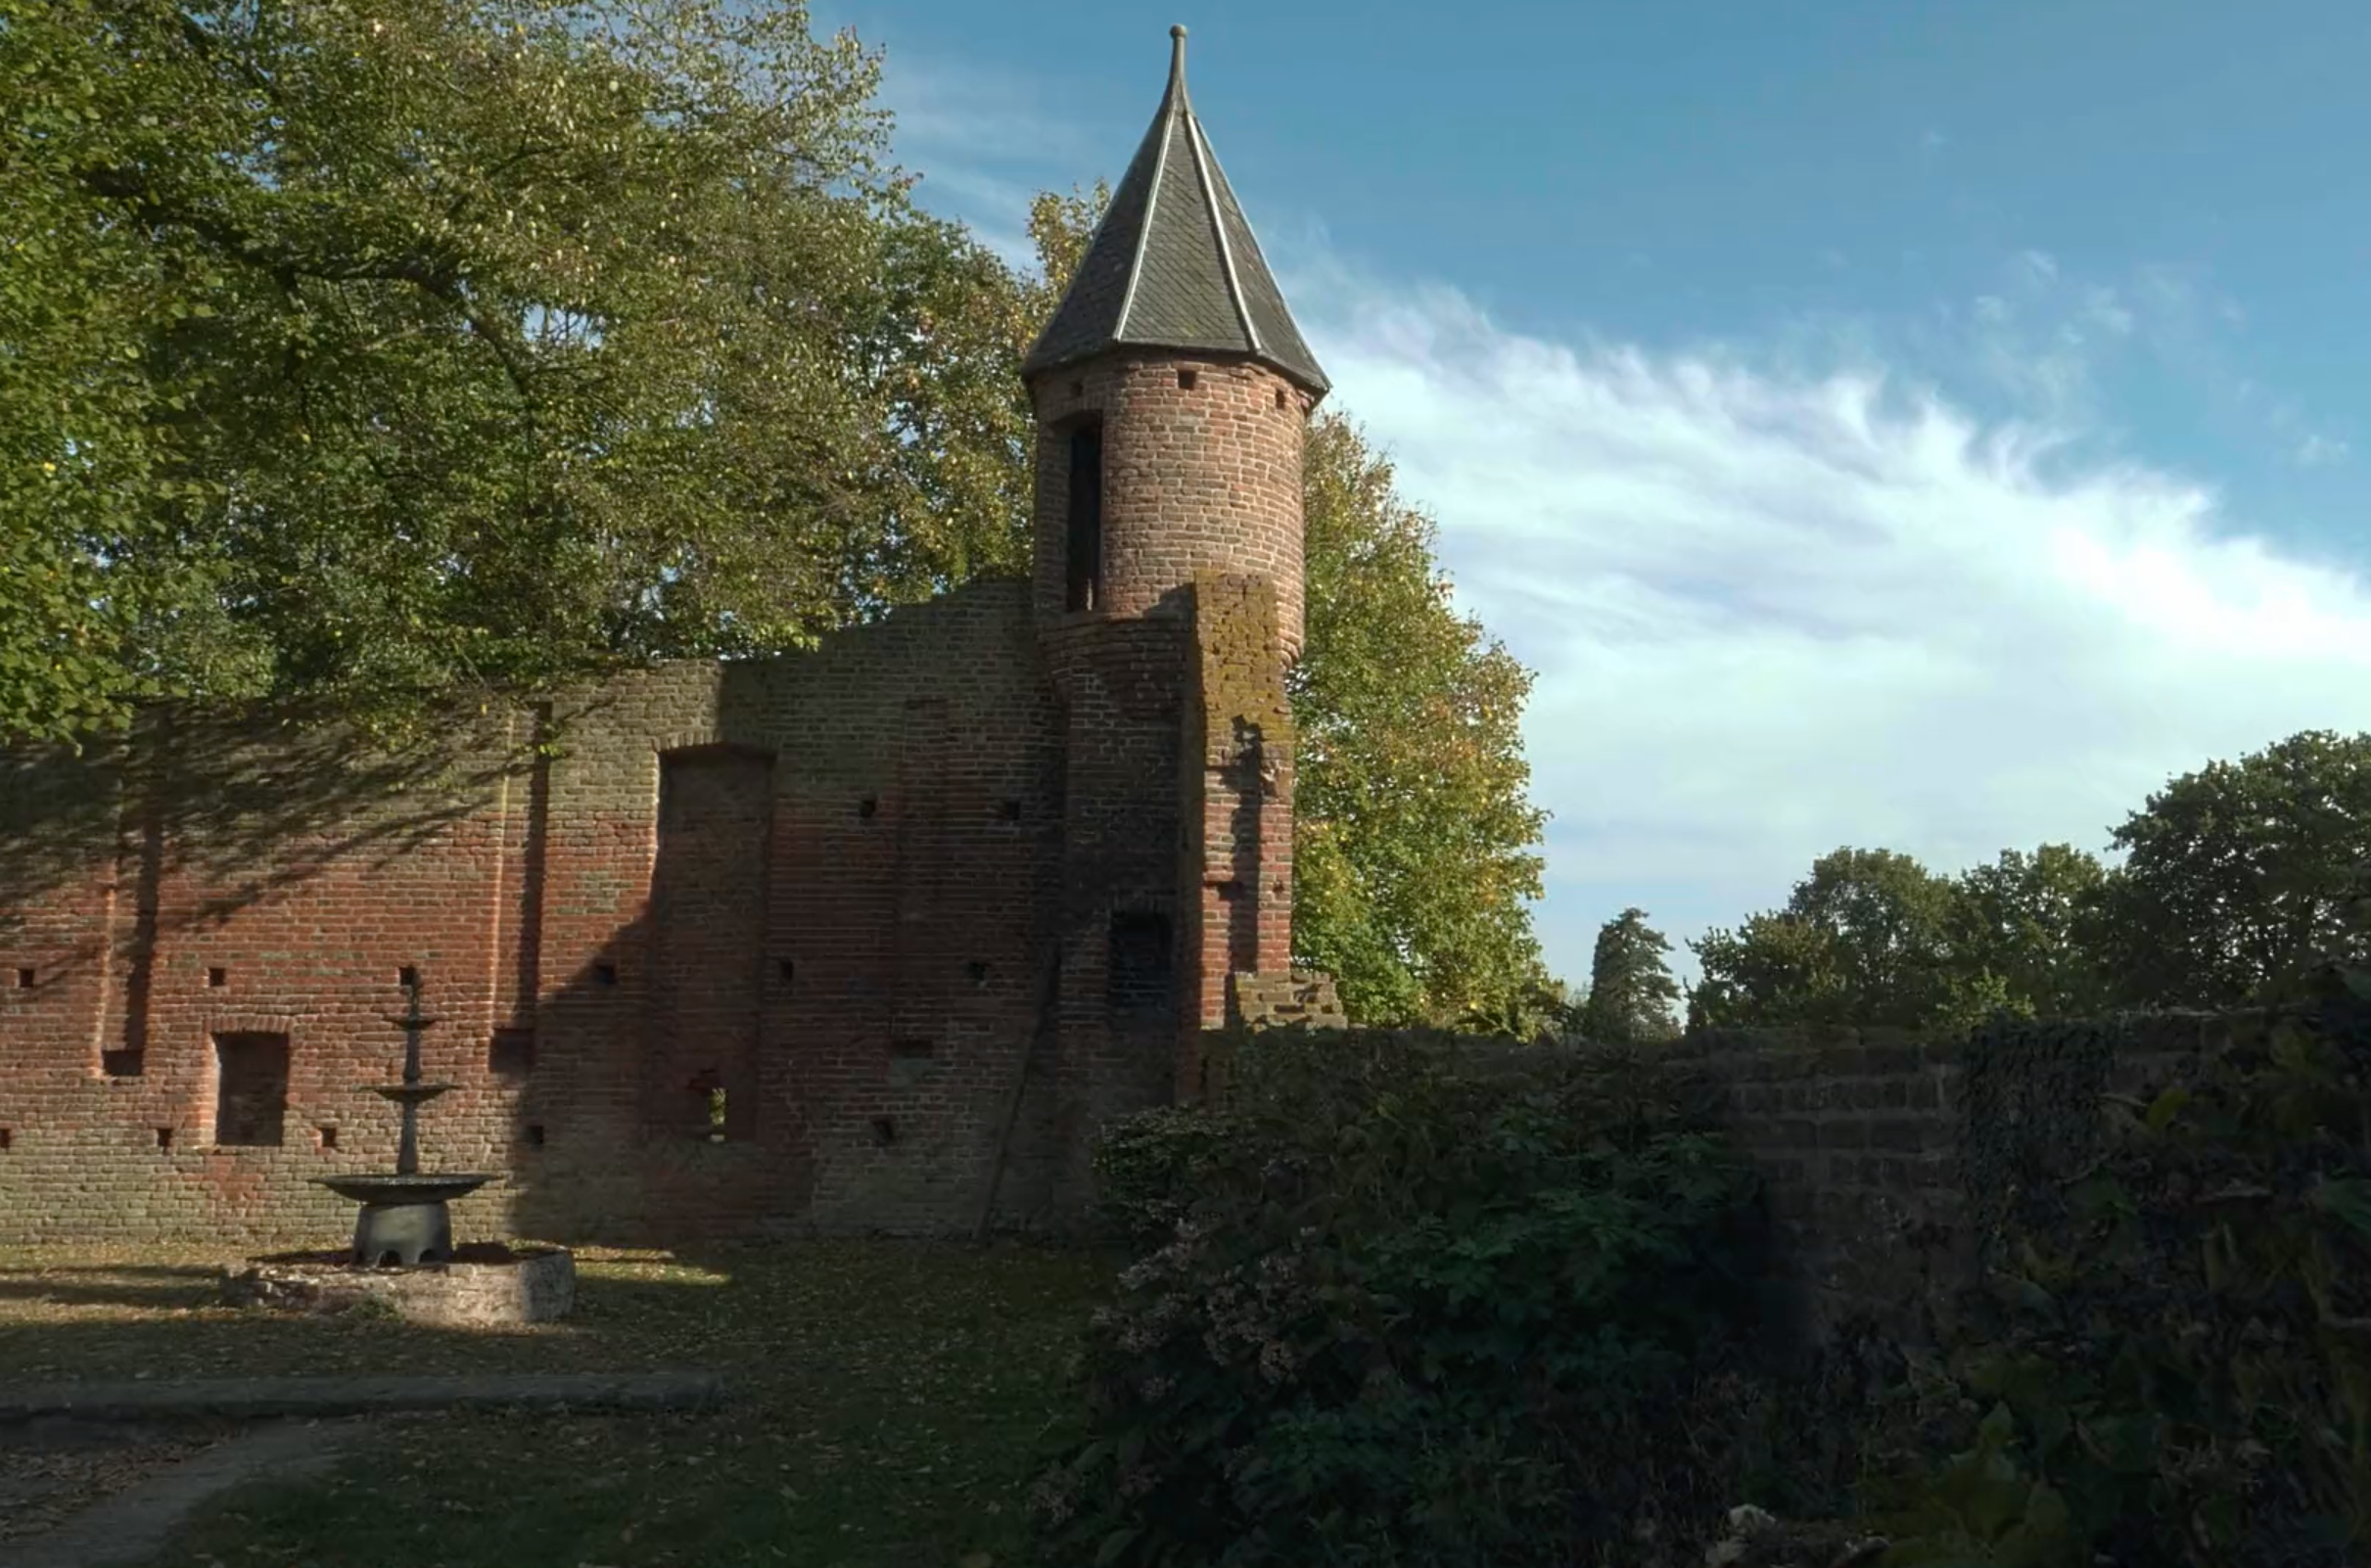 Bach-Castles-Gwilt-Nijsinghhuis-Detmar-Leertouwer-cello-violoncello-baroque-bachsuite-suite16.png